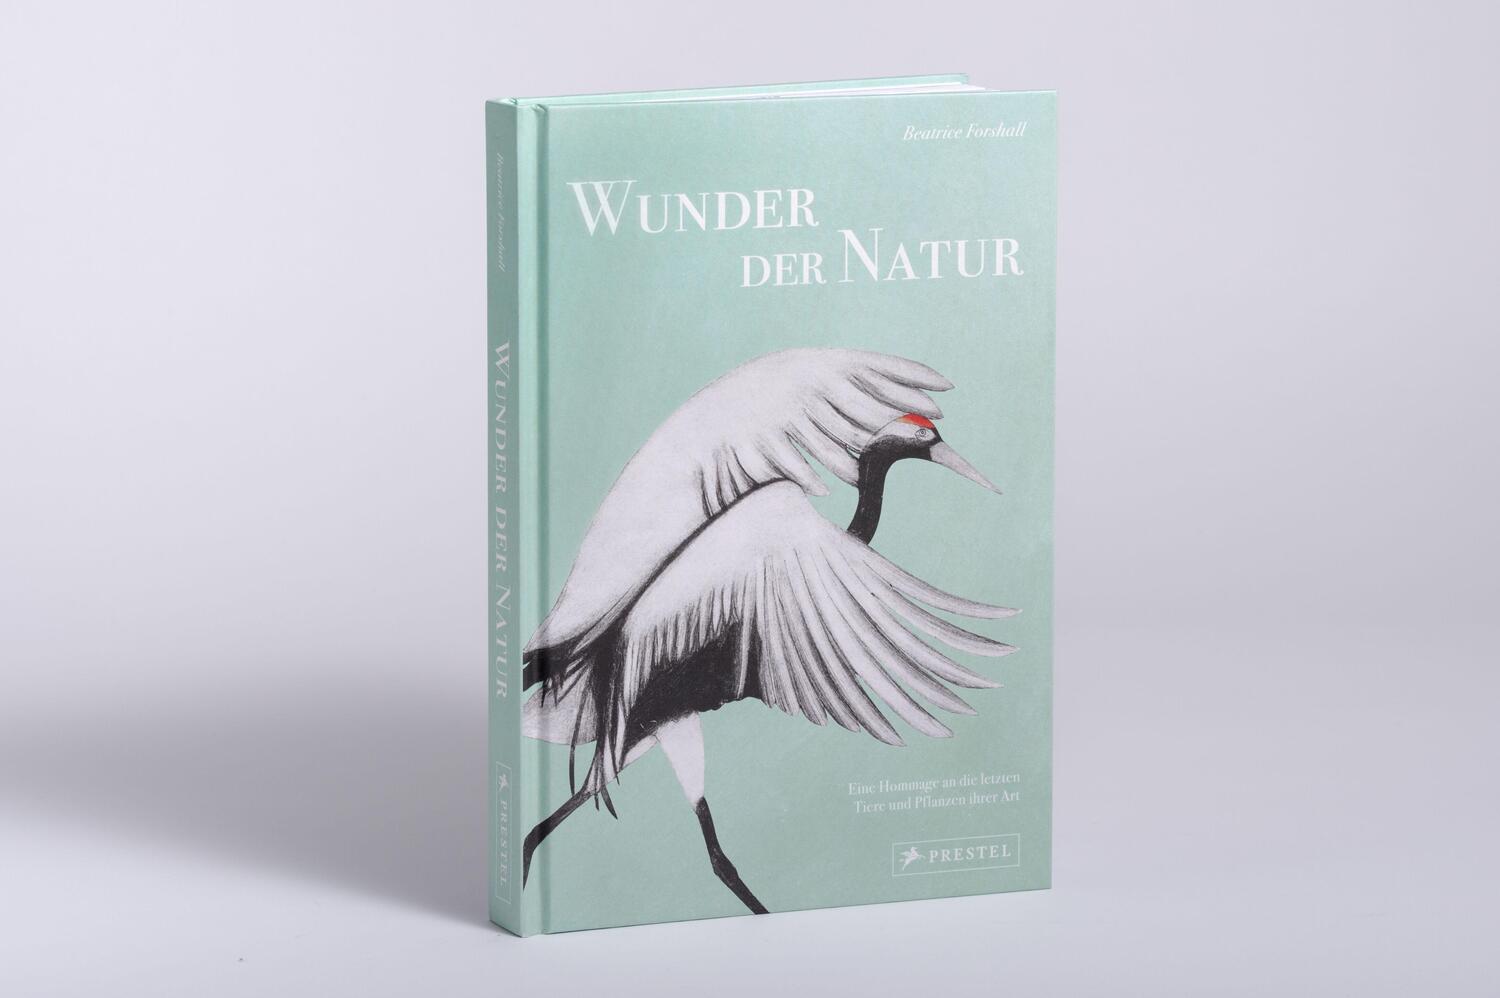 Bild: 9783791389462 | Wunder der Natur | Beatrice Forshall | Buch | 256 S. | Deutsch | 2023